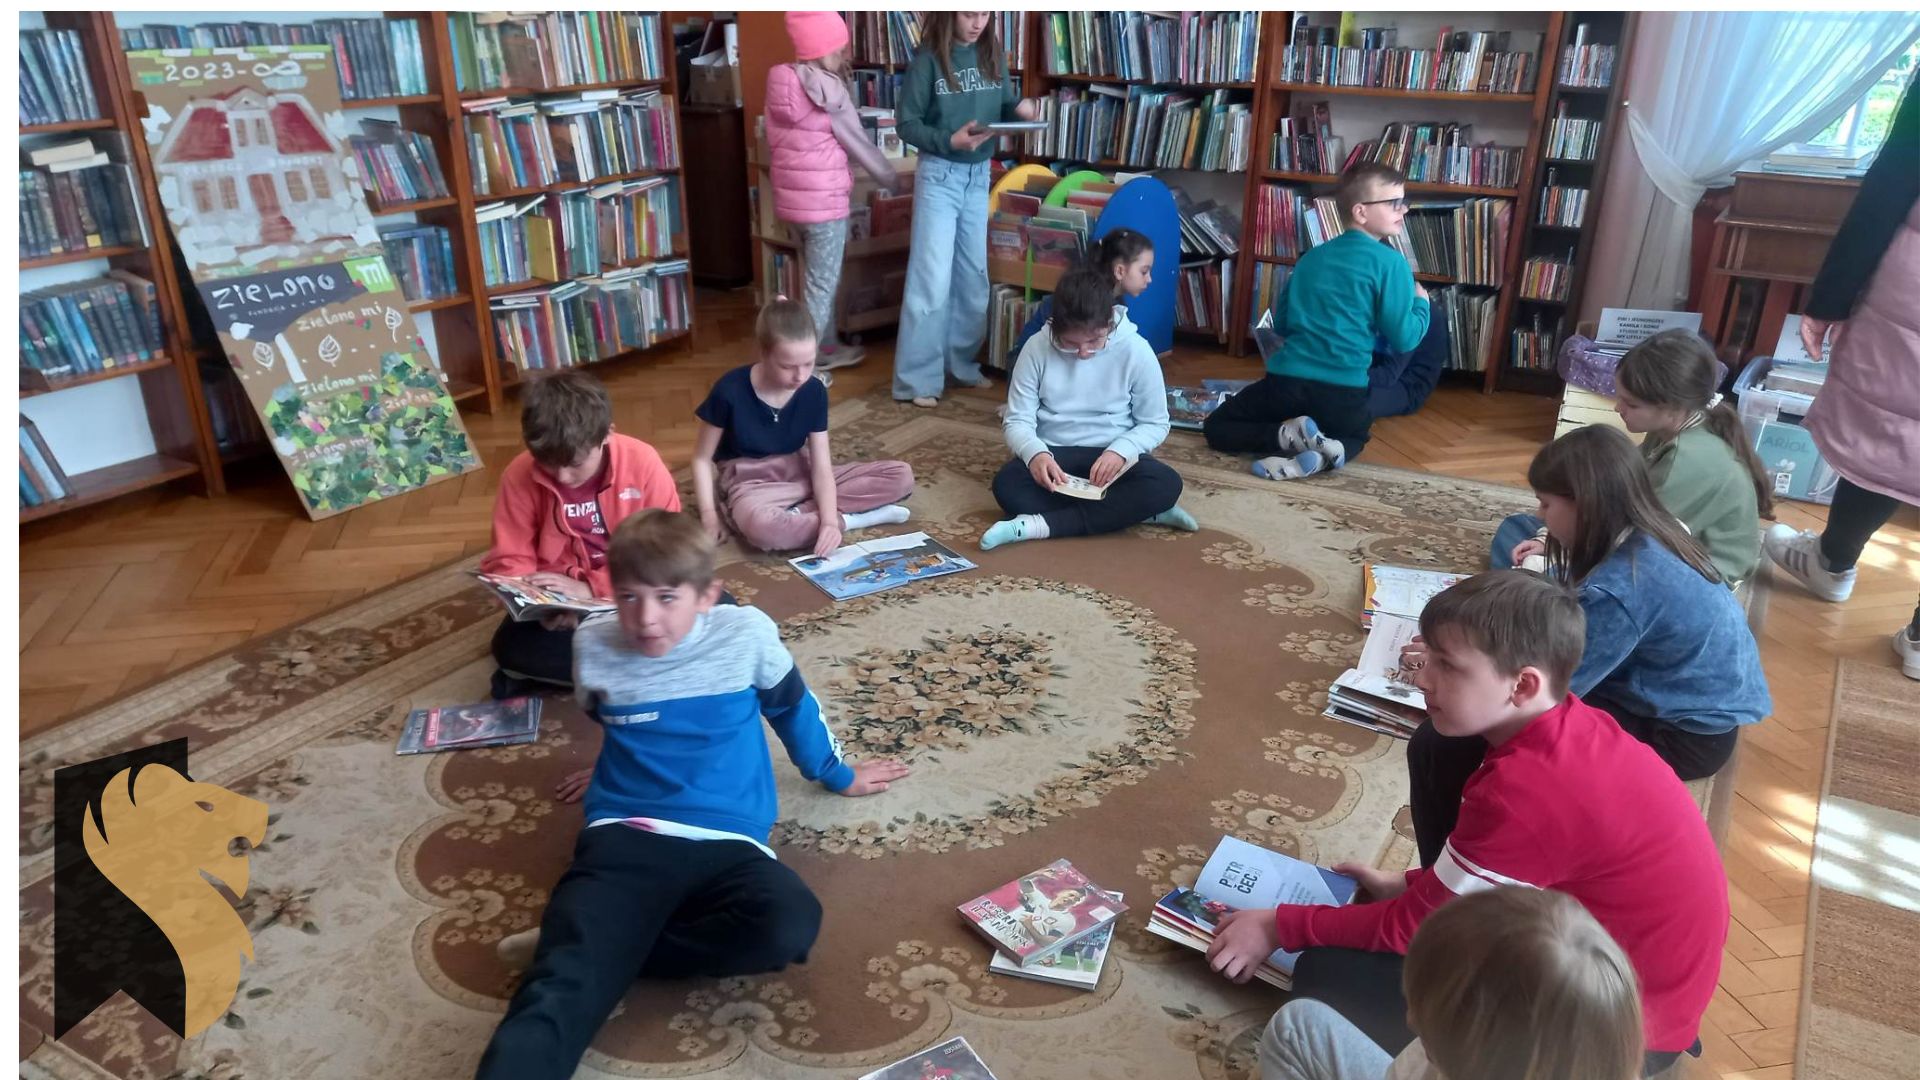 Dzieci siedzą na dywanie i oglądają książki. W tle regały z książkami.